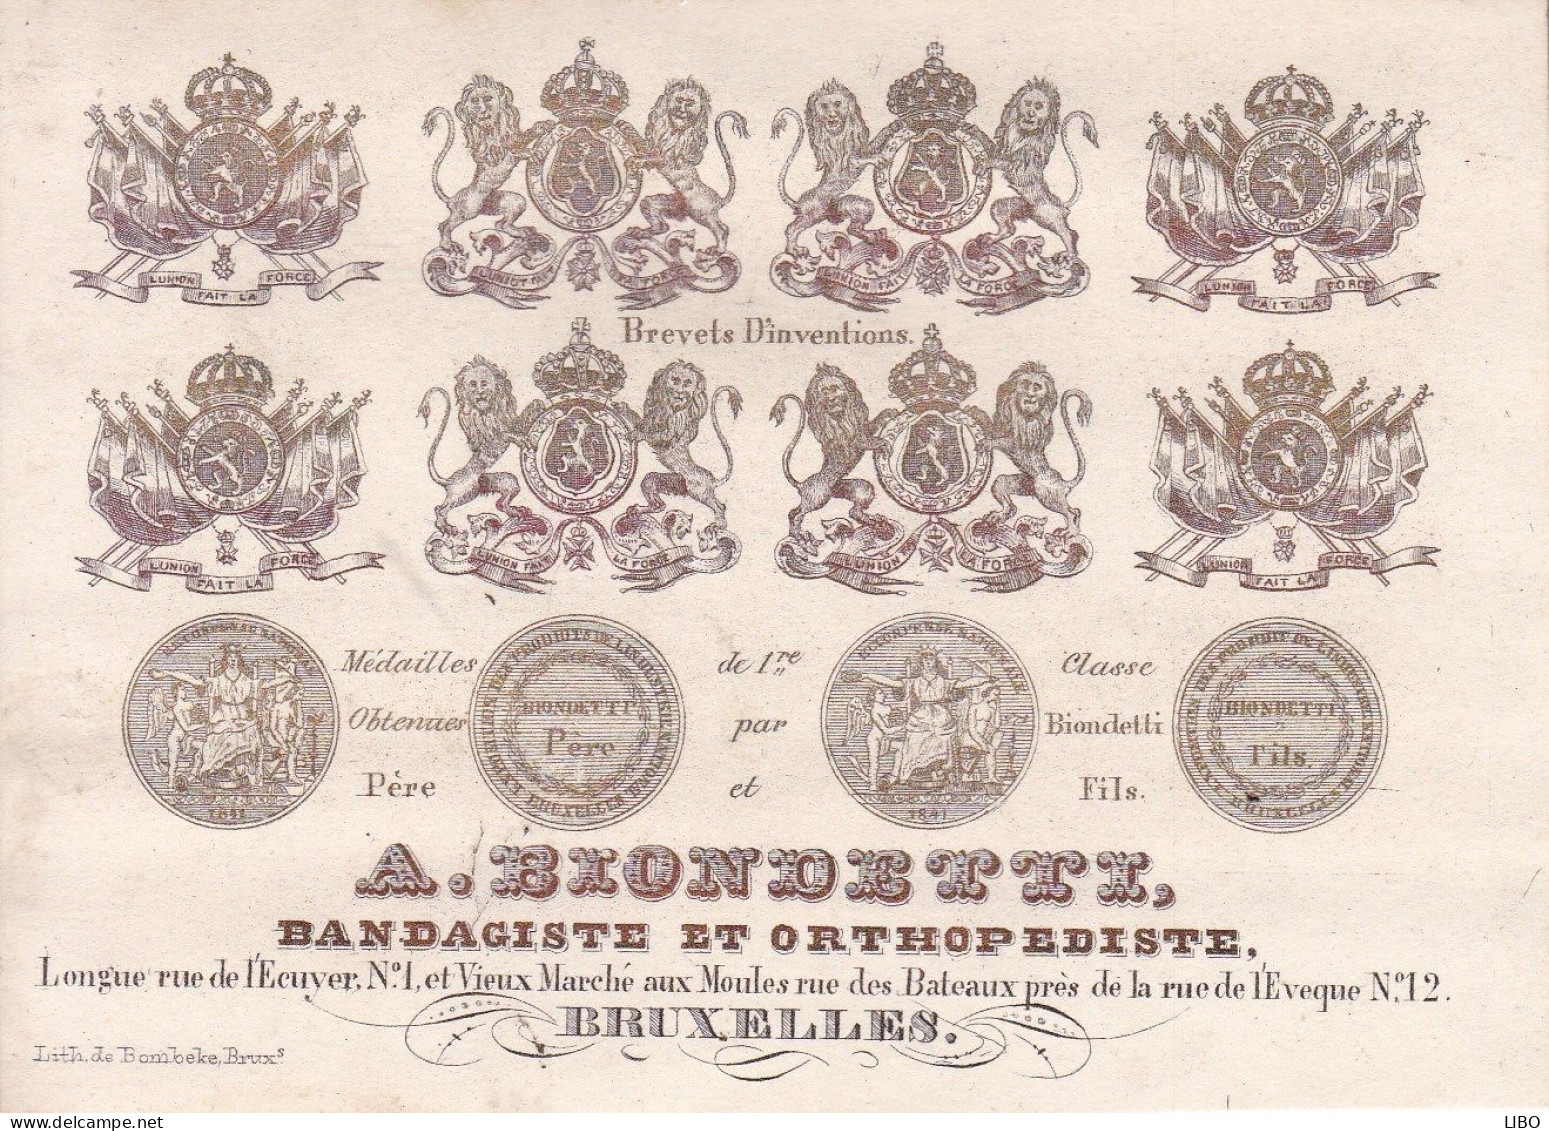 BRUXELLES BLONDETTZ Bandagiste Orthopédiste Vieux Marché Aux Moules Carte Porcelaine Années 1850-1860 - Porcelaine